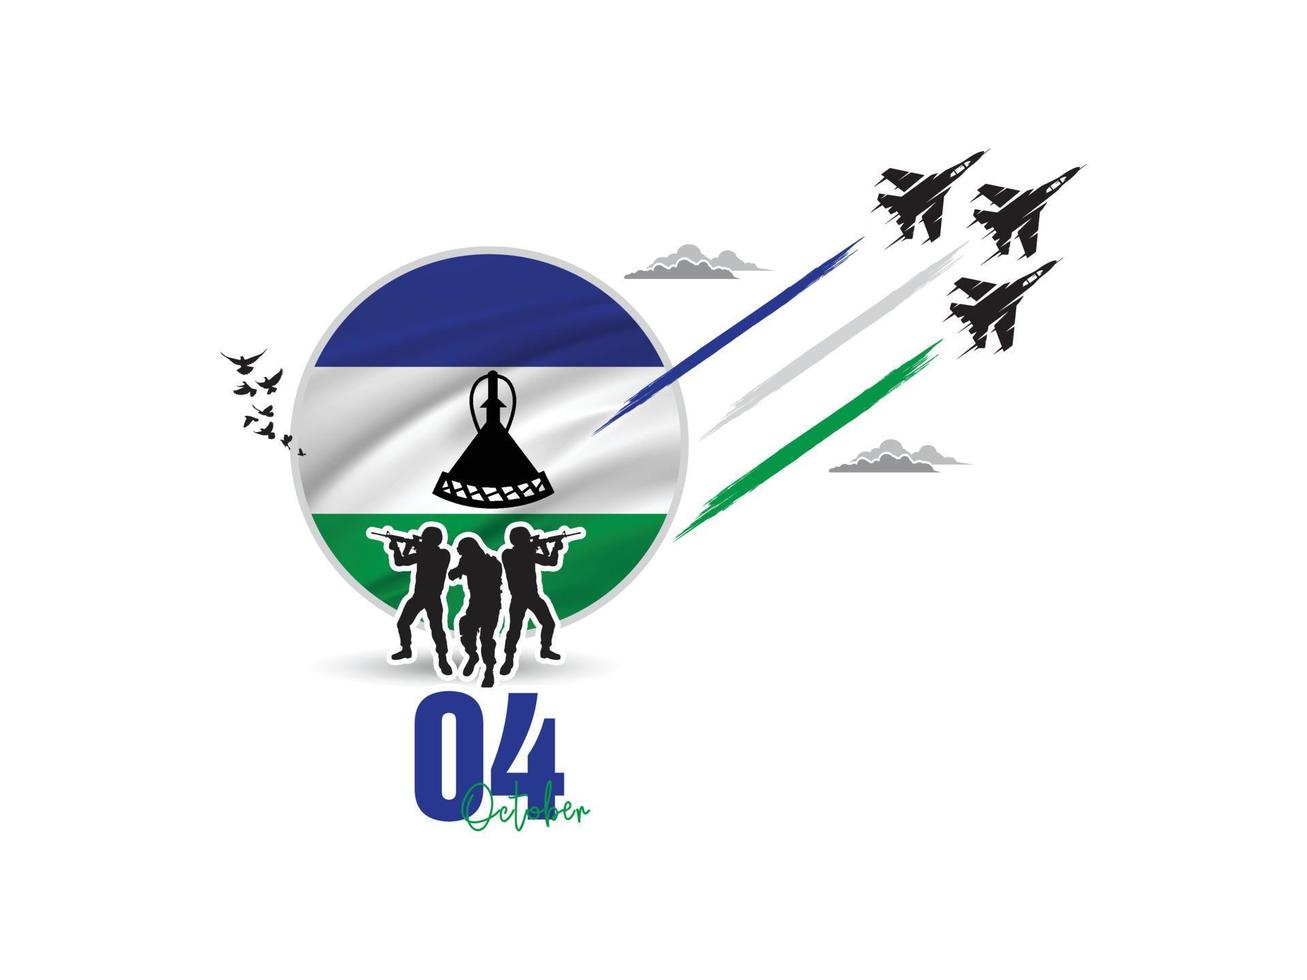 4. oktober, der den unabhängigkeitstag von lesotho feiert, grüßende soldaten und armeen sind im einsatz, luftstreitkräfte zeigen eine flugschau am himmel, ein nationalfeiertag, der 1966 von der republik lesotho begangen wurde vektor